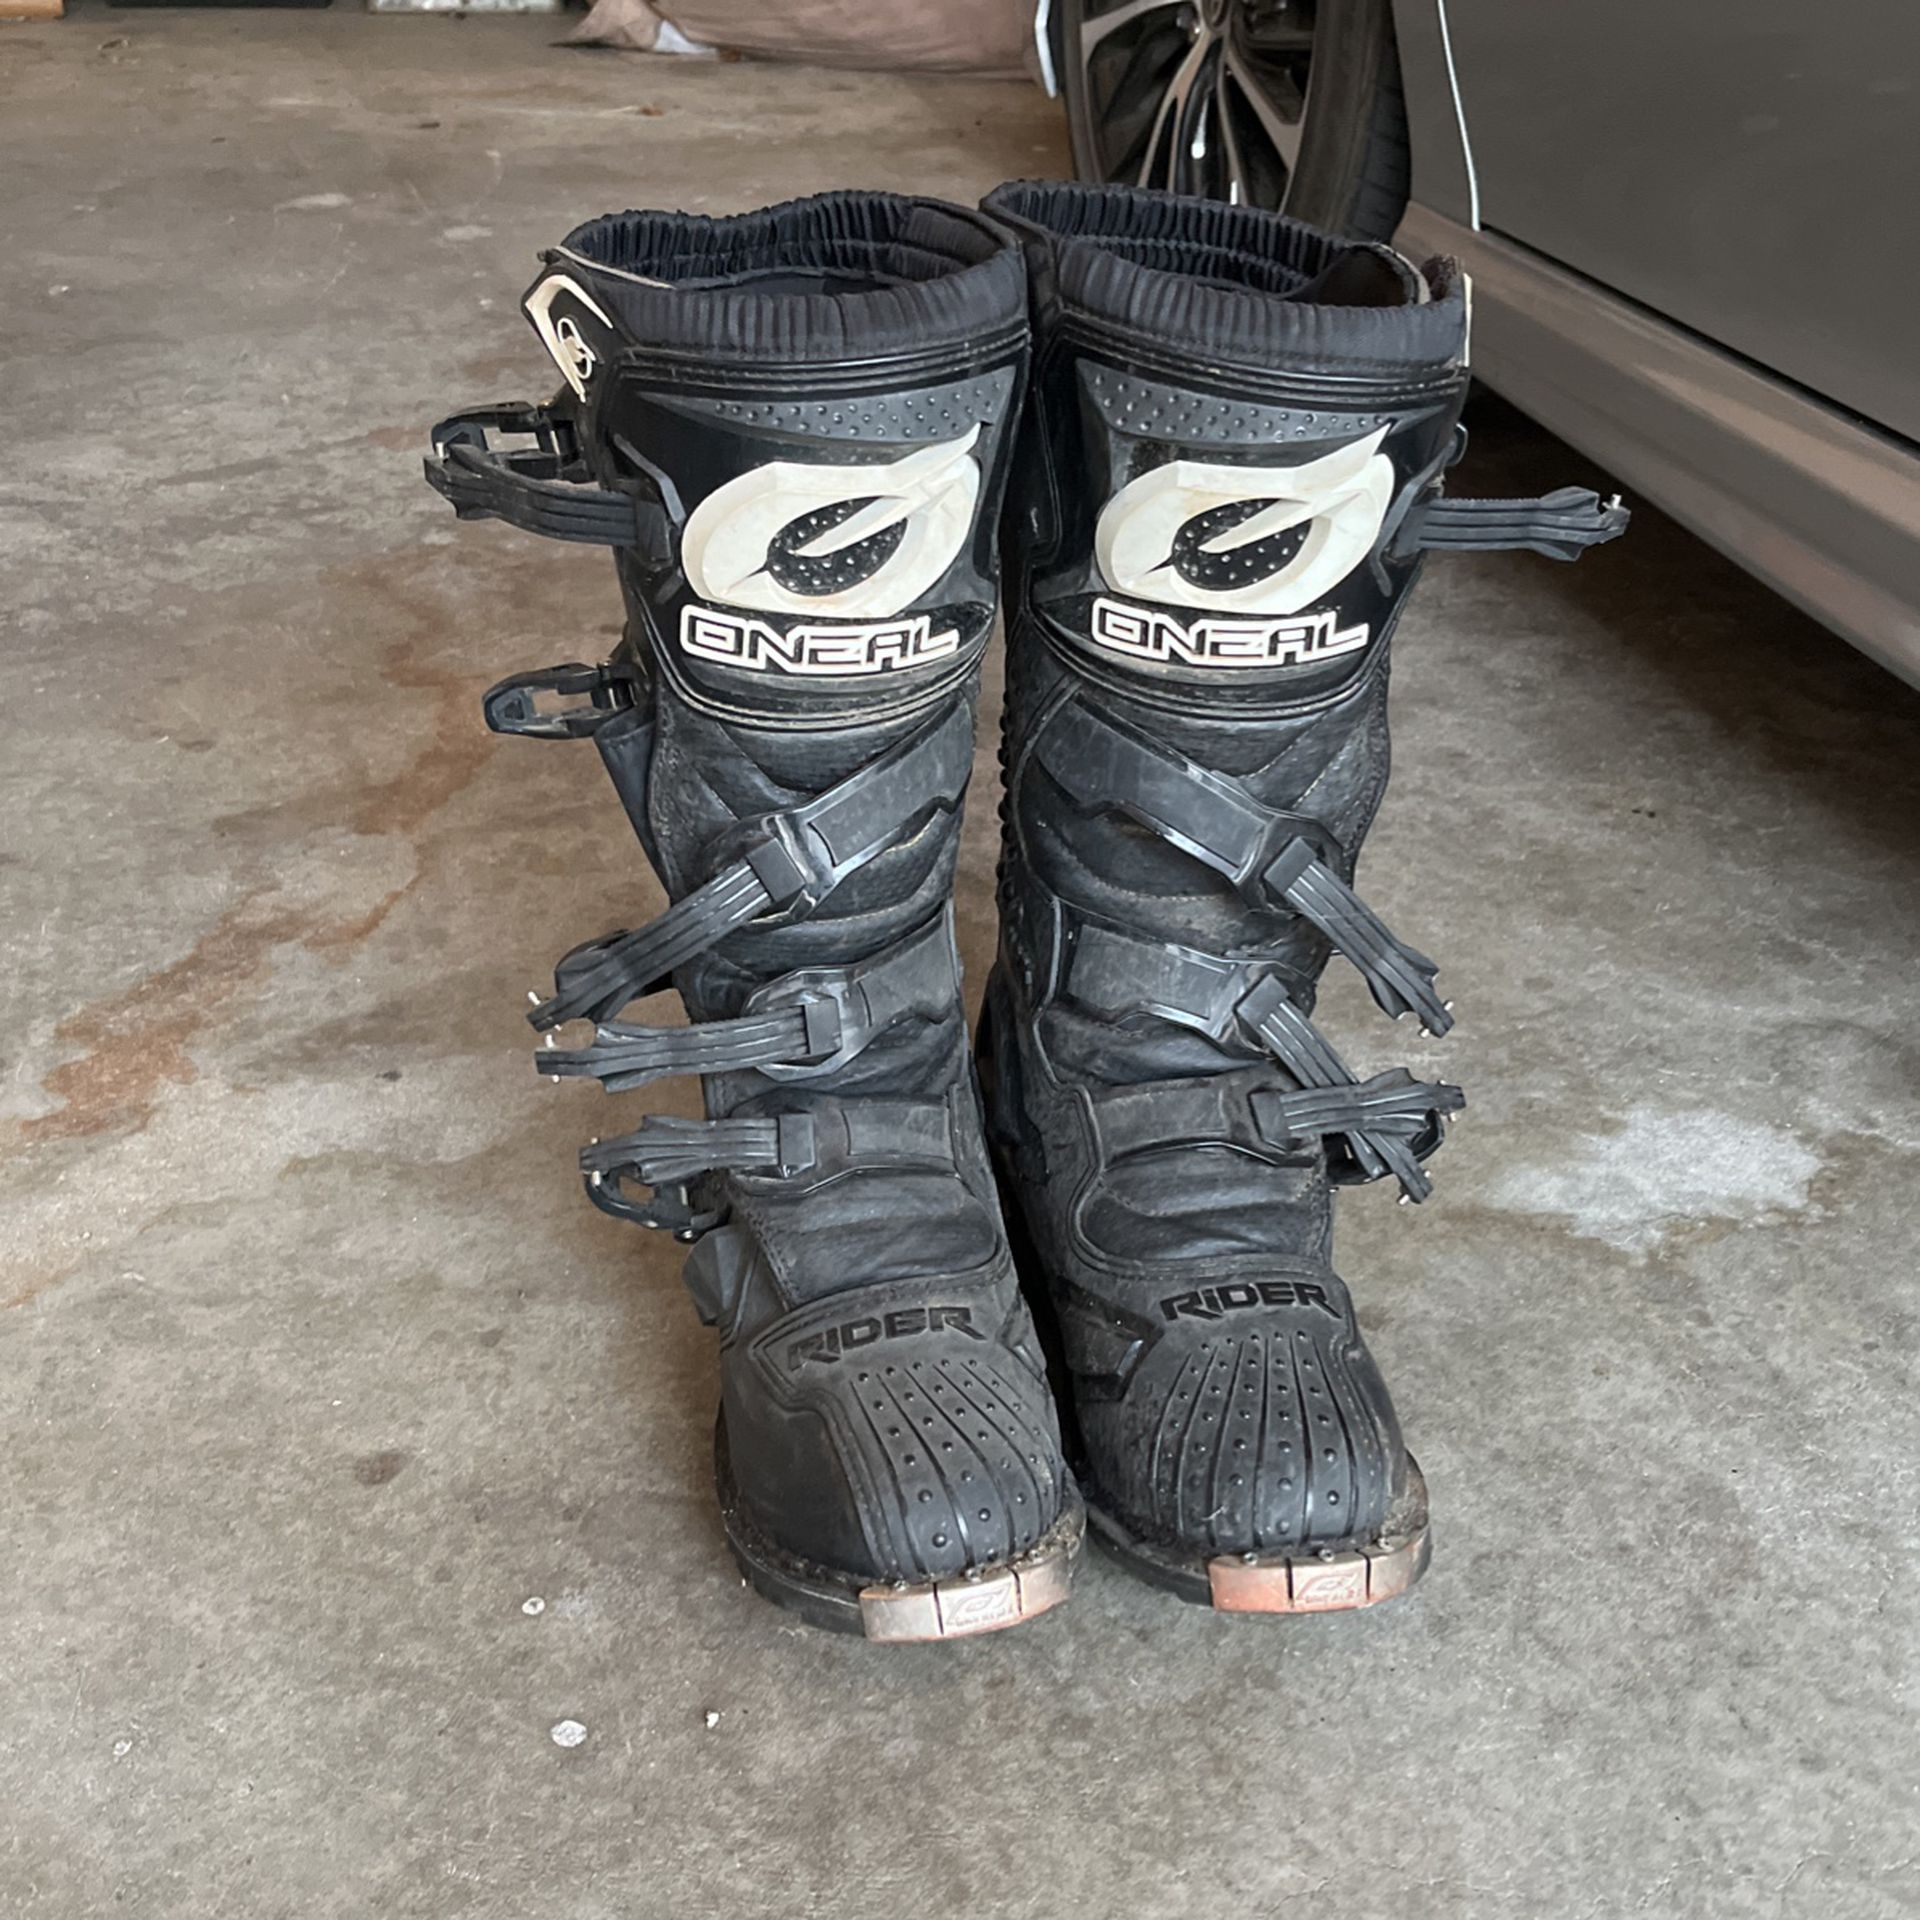 O’neal dirt bike boots